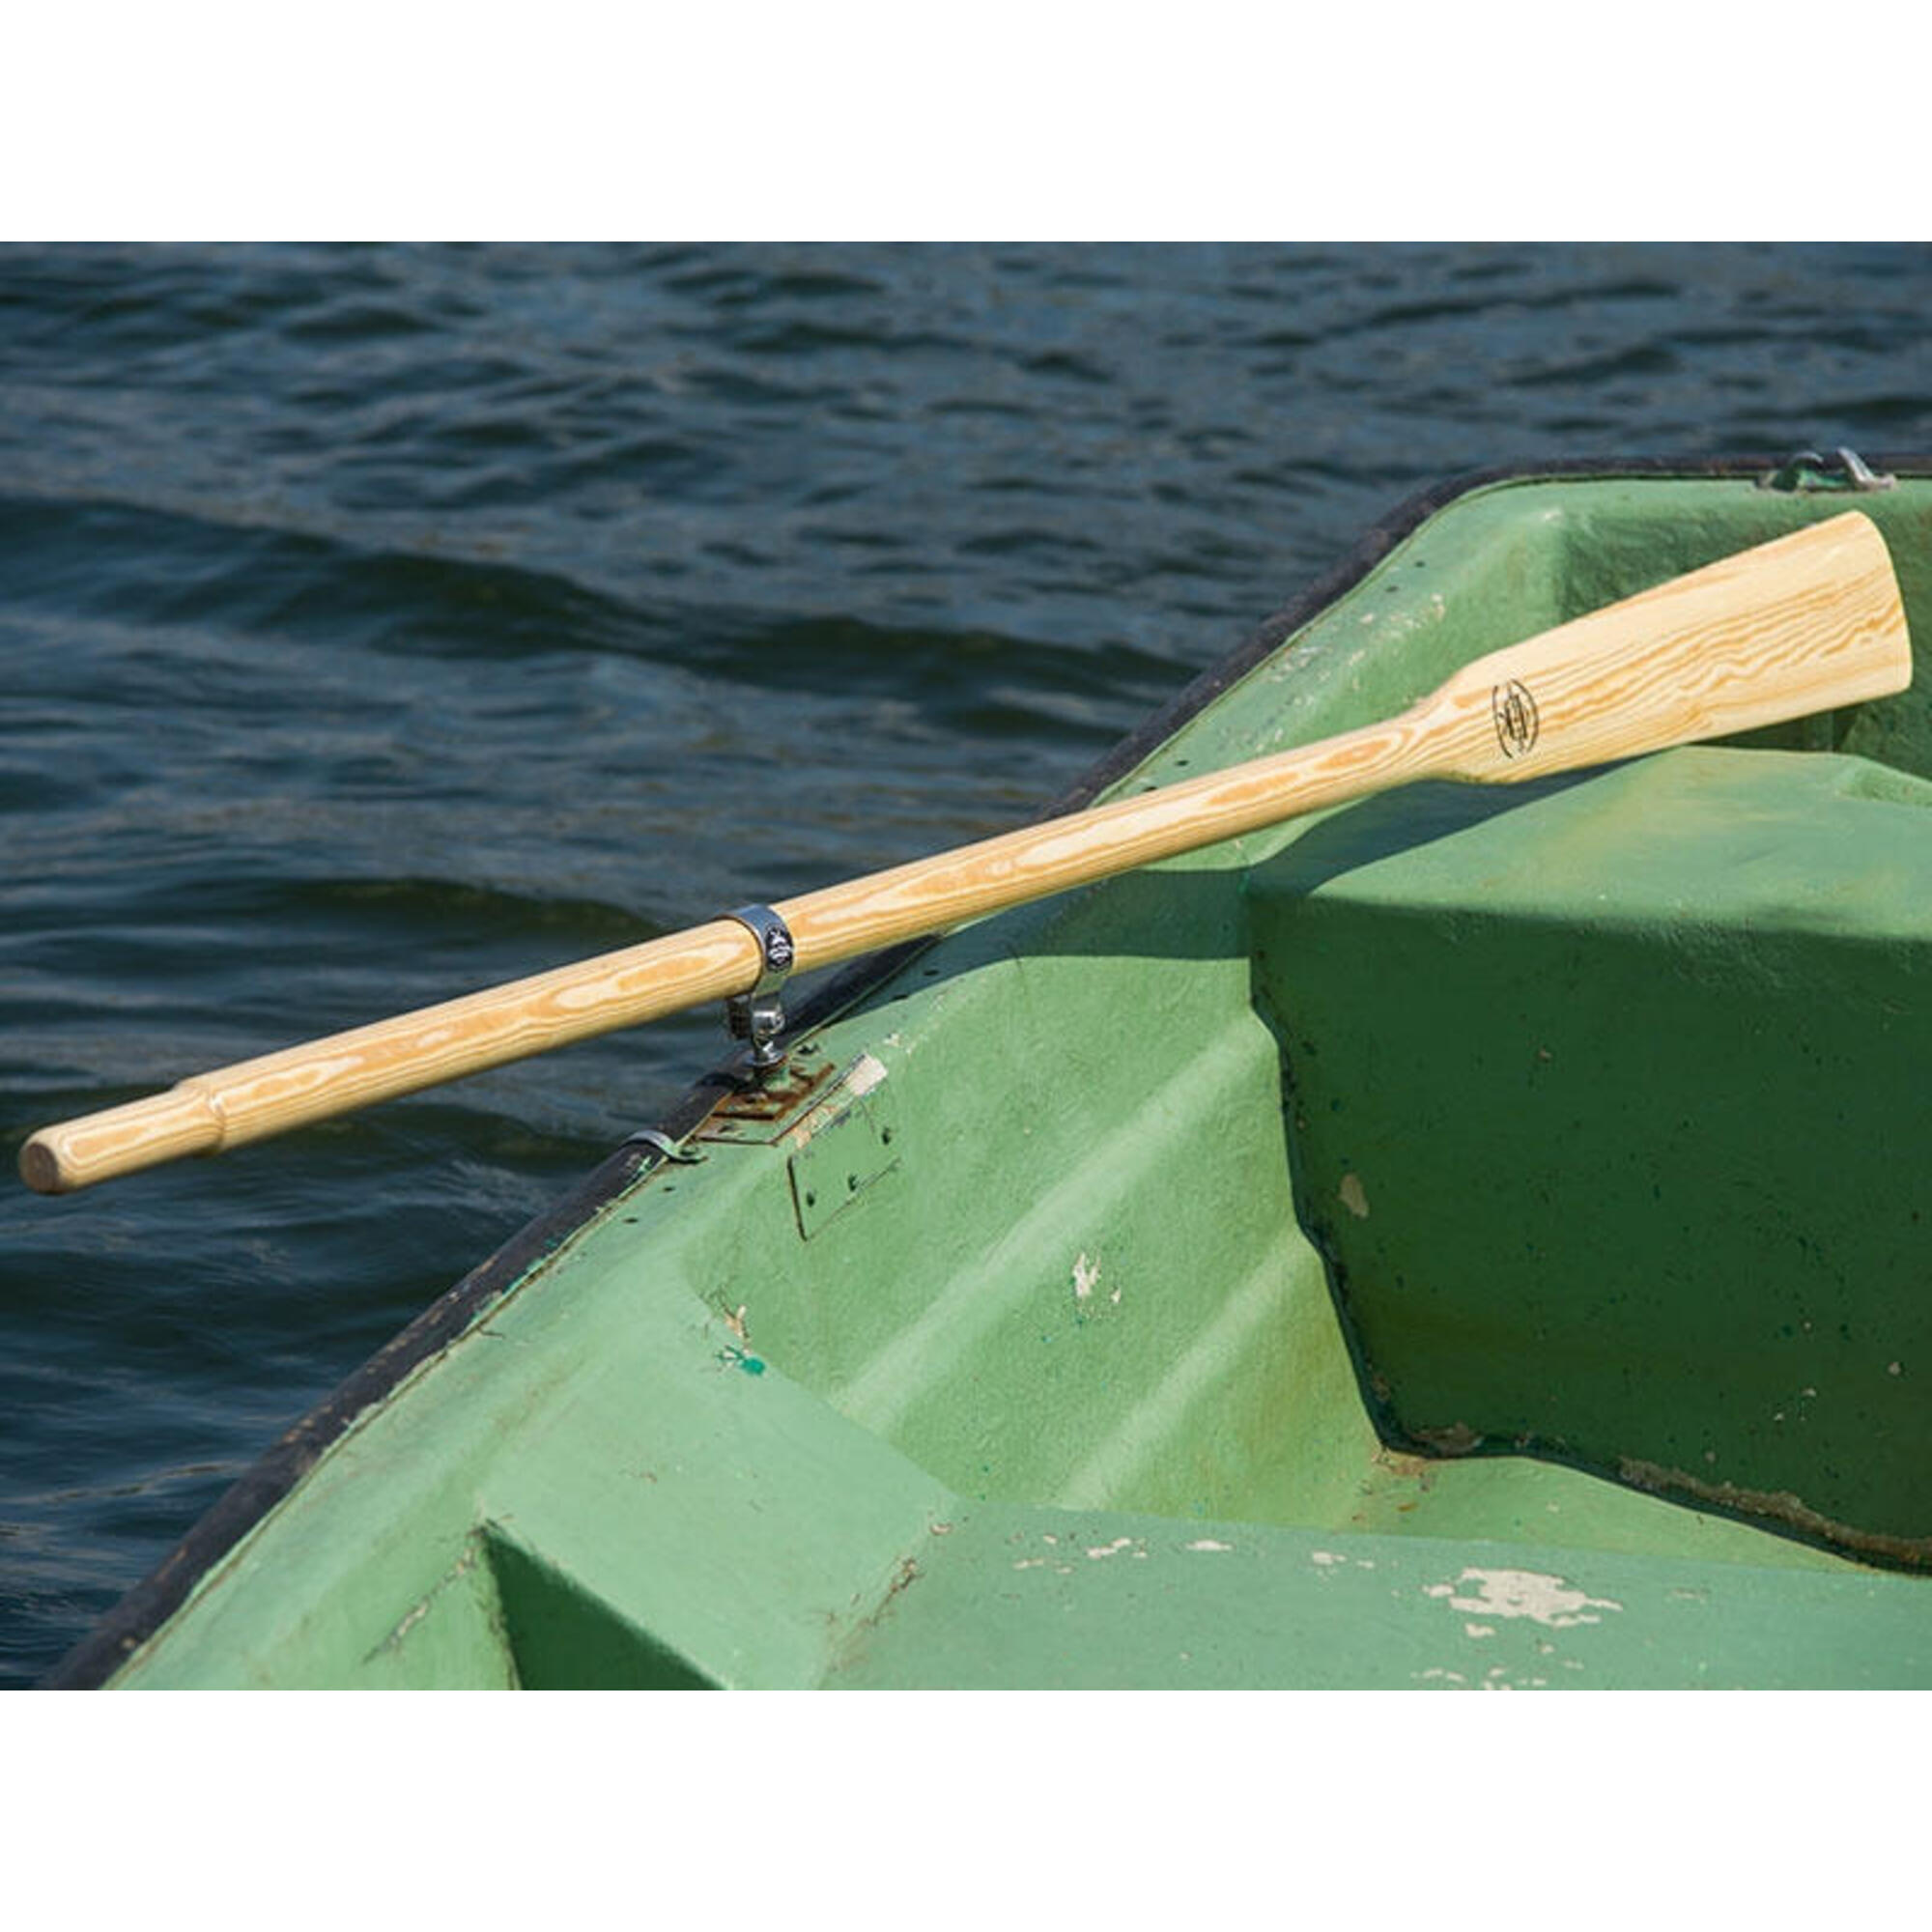 Wiosła szalupowe do łodzi John Paddle dulki pałąkowe z osłonami 40mm